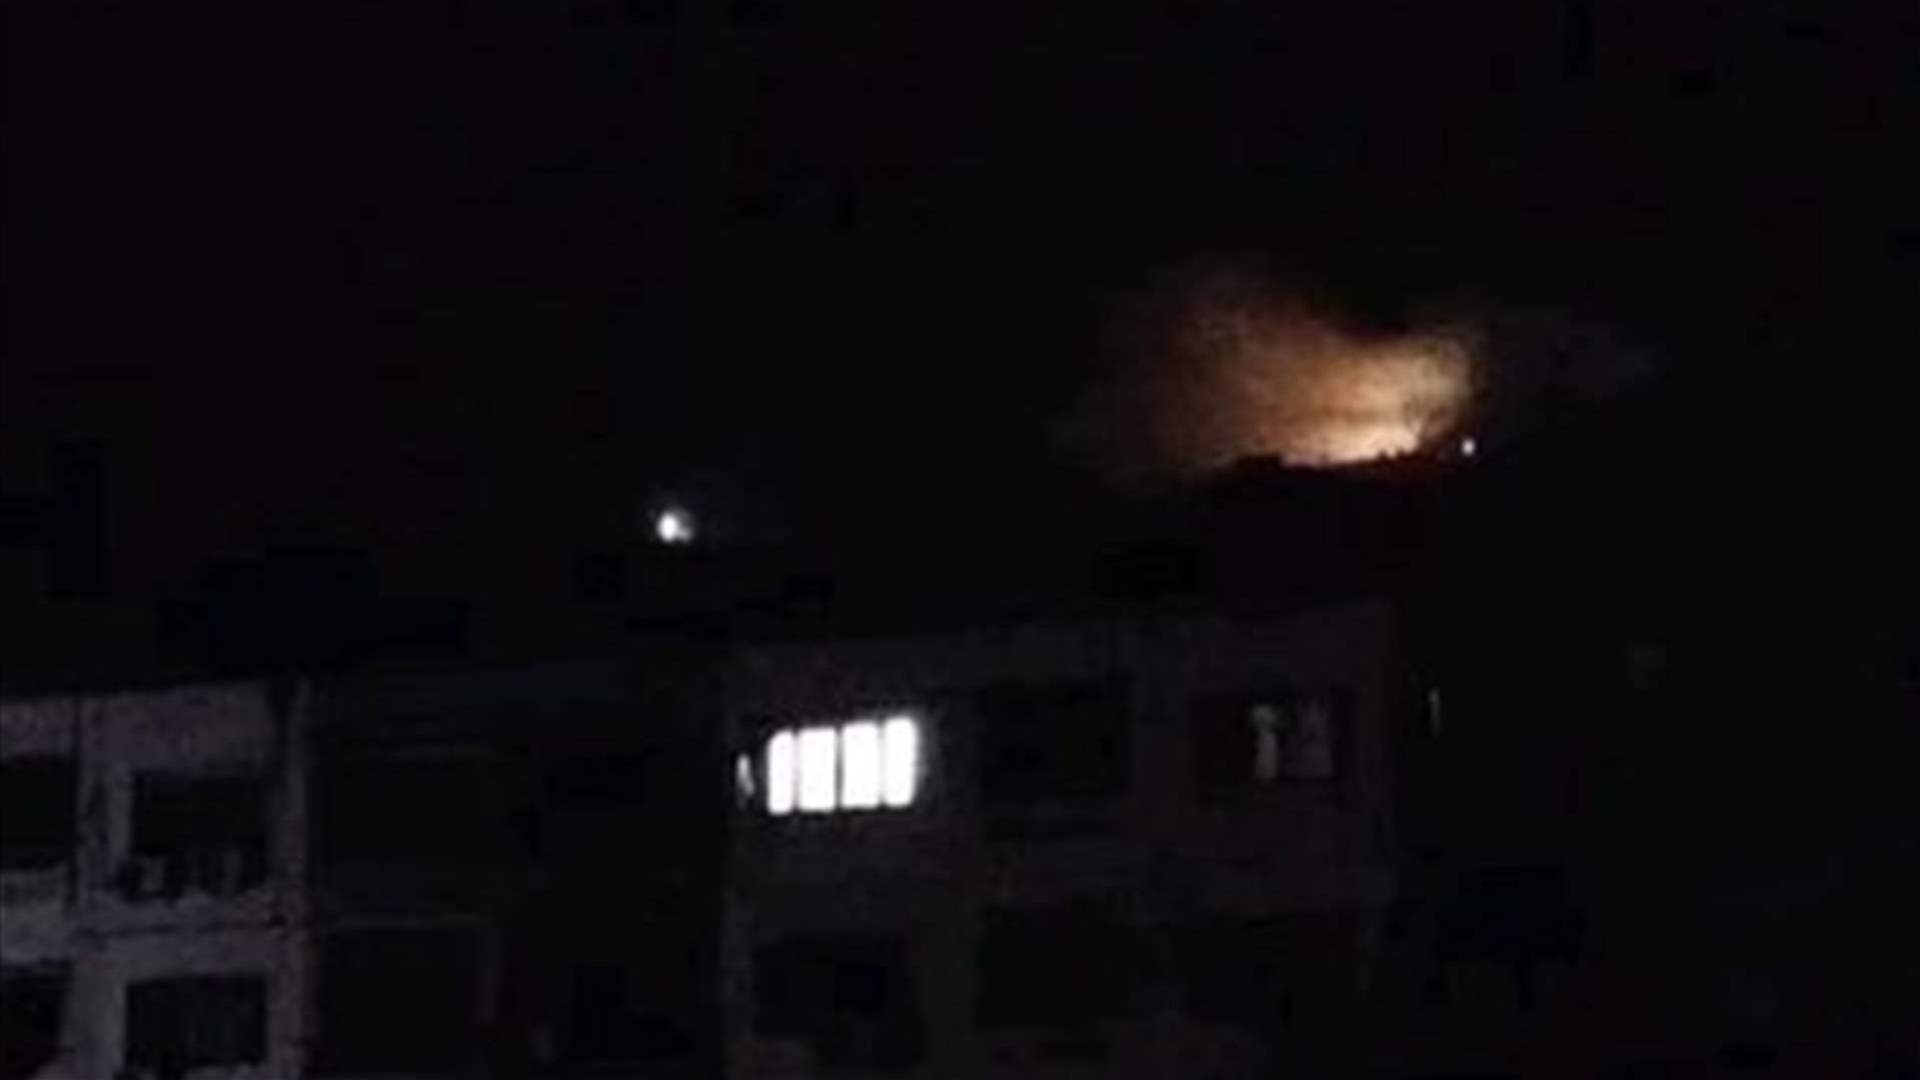 سوريا تسقط صواريخ إسرائيلية تم إطلاقها من الجولان نحو محيط دمشق